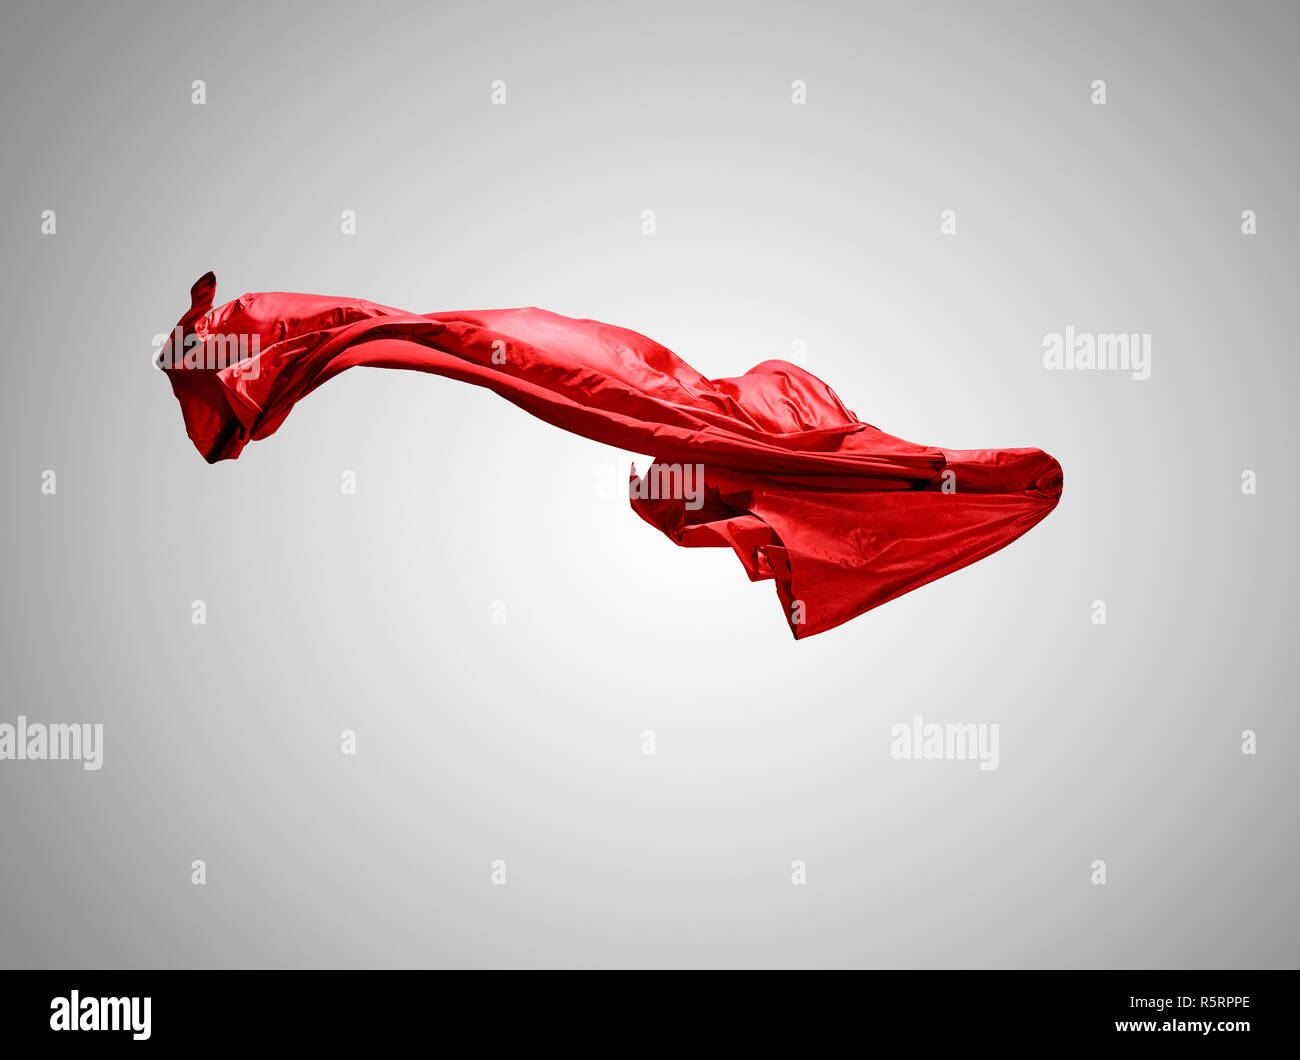 Glatt elegante transparent rot Tuch auf grauem Hintergrund getrennt  Stockfotografie - Alamy